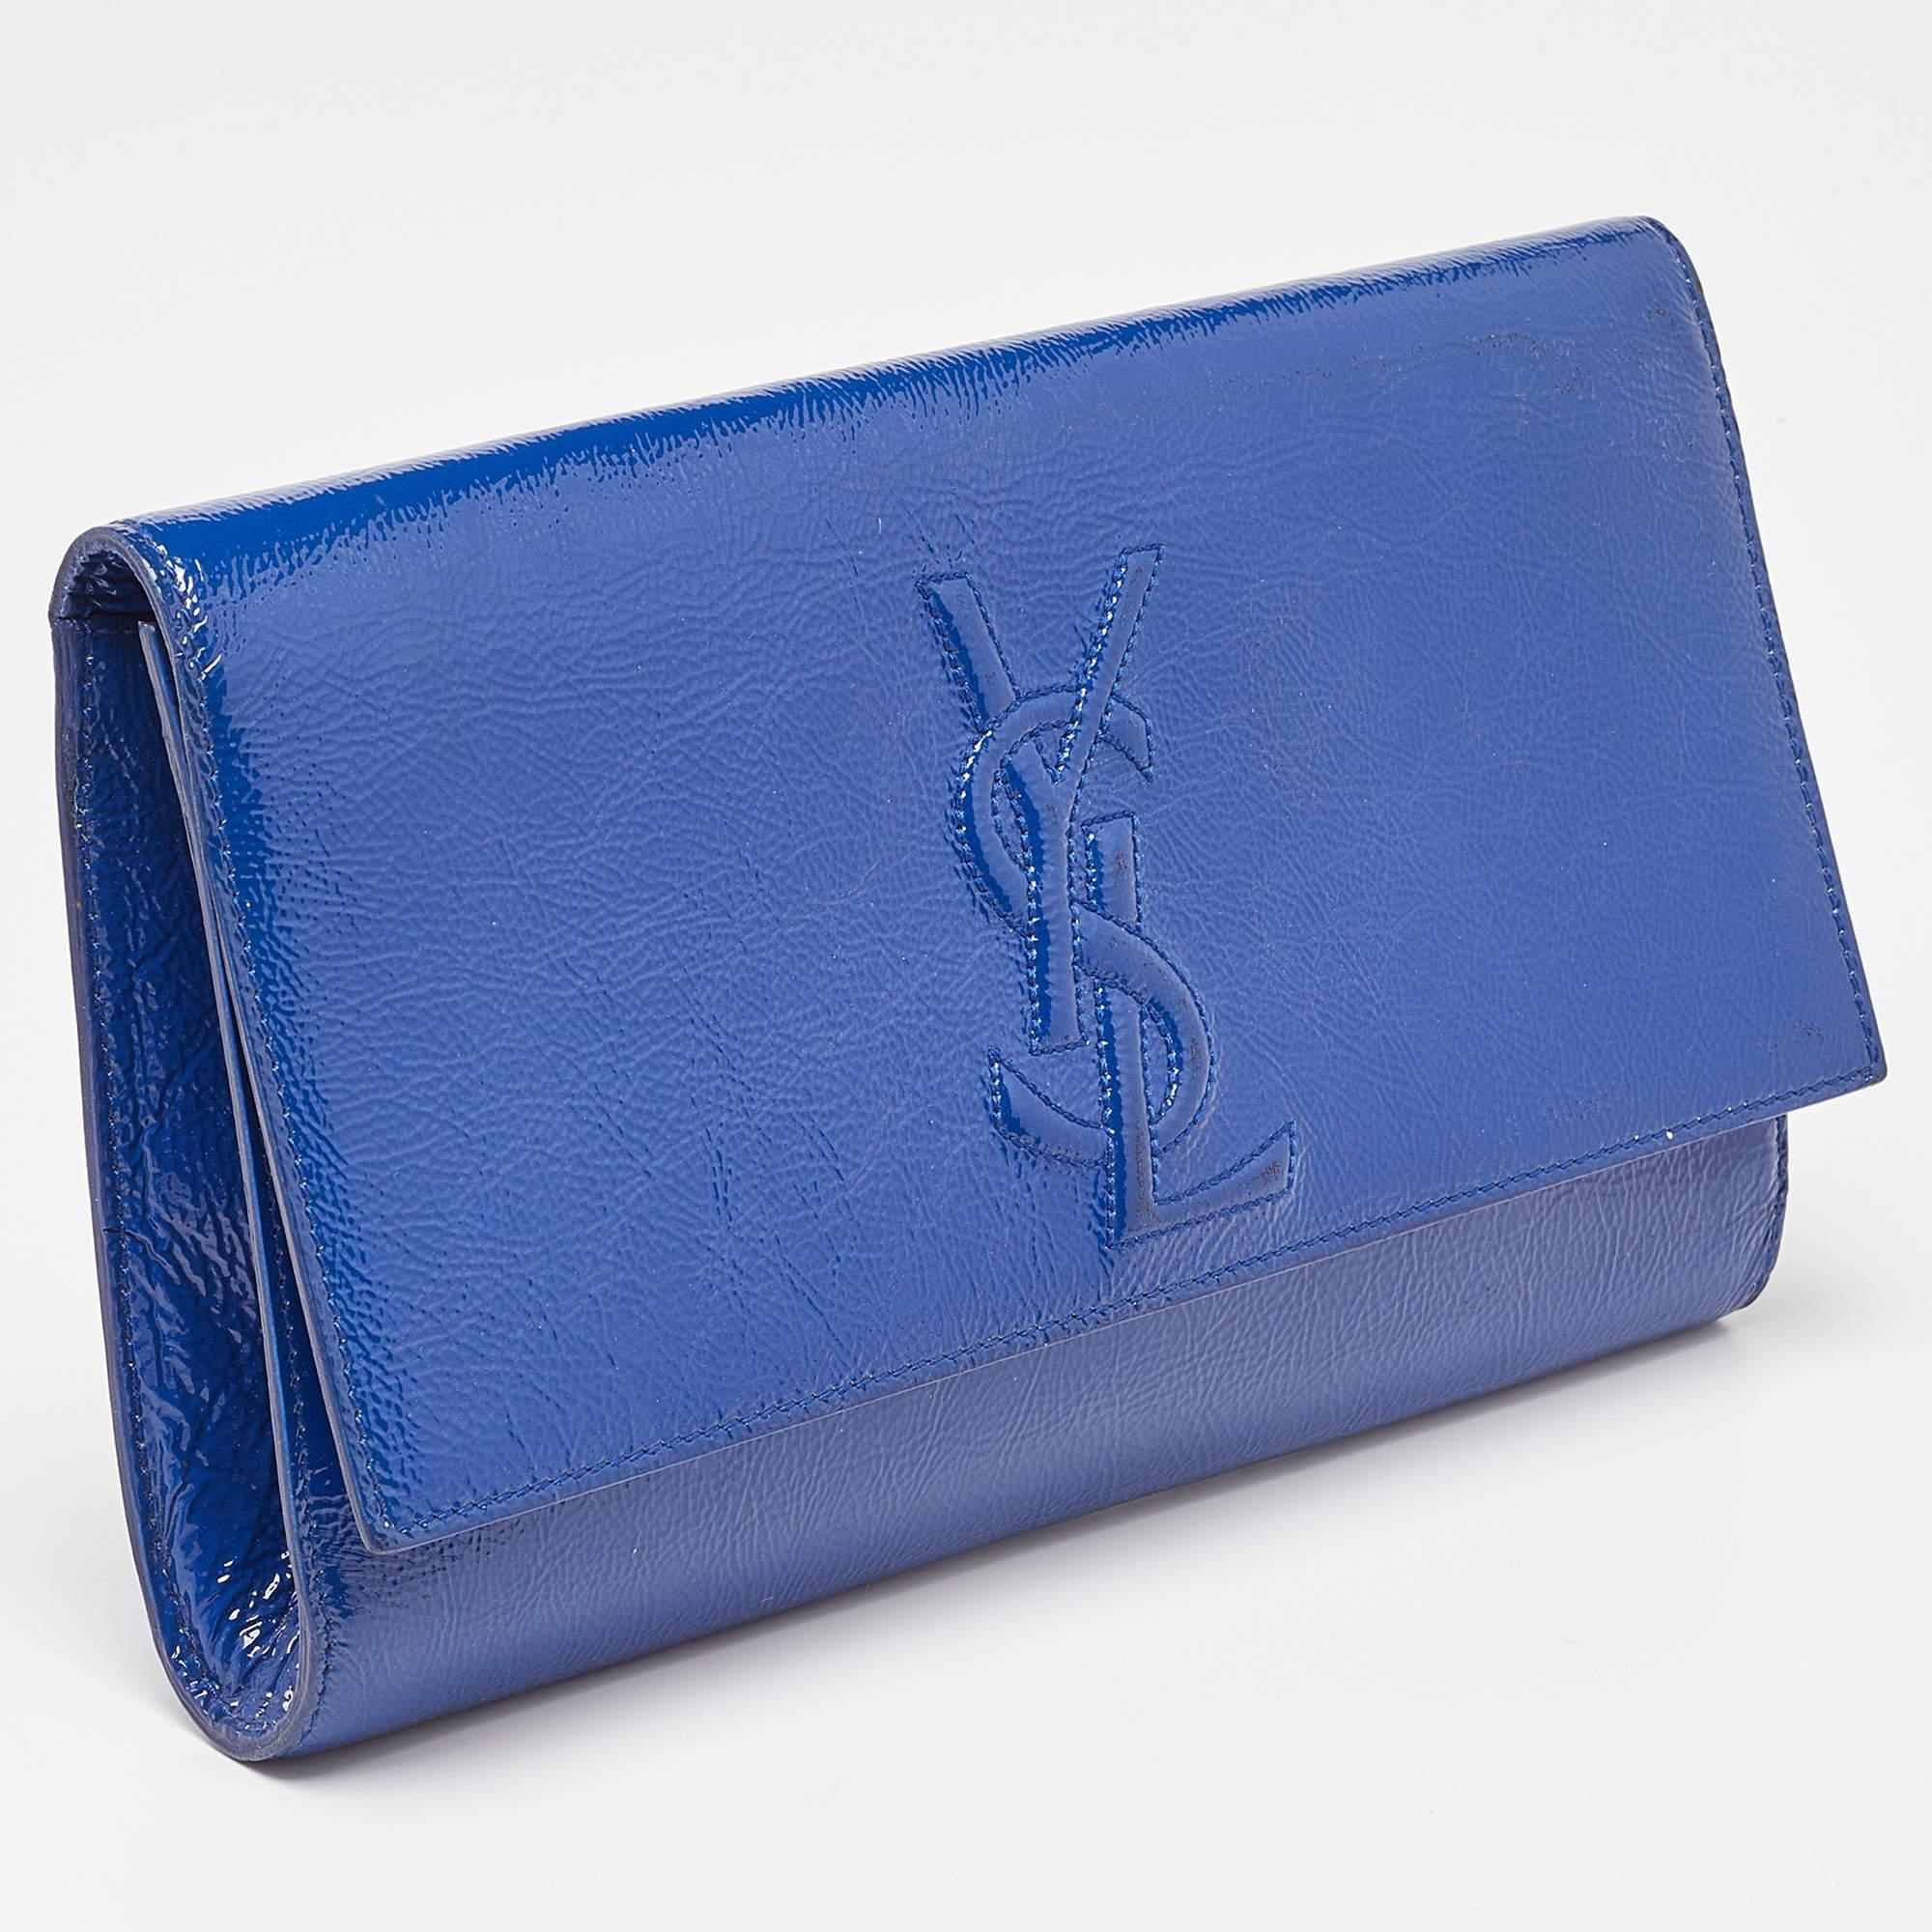 Yves Saint Laurent Blue Patent Leather Belle De Jour Flap Clutch 3